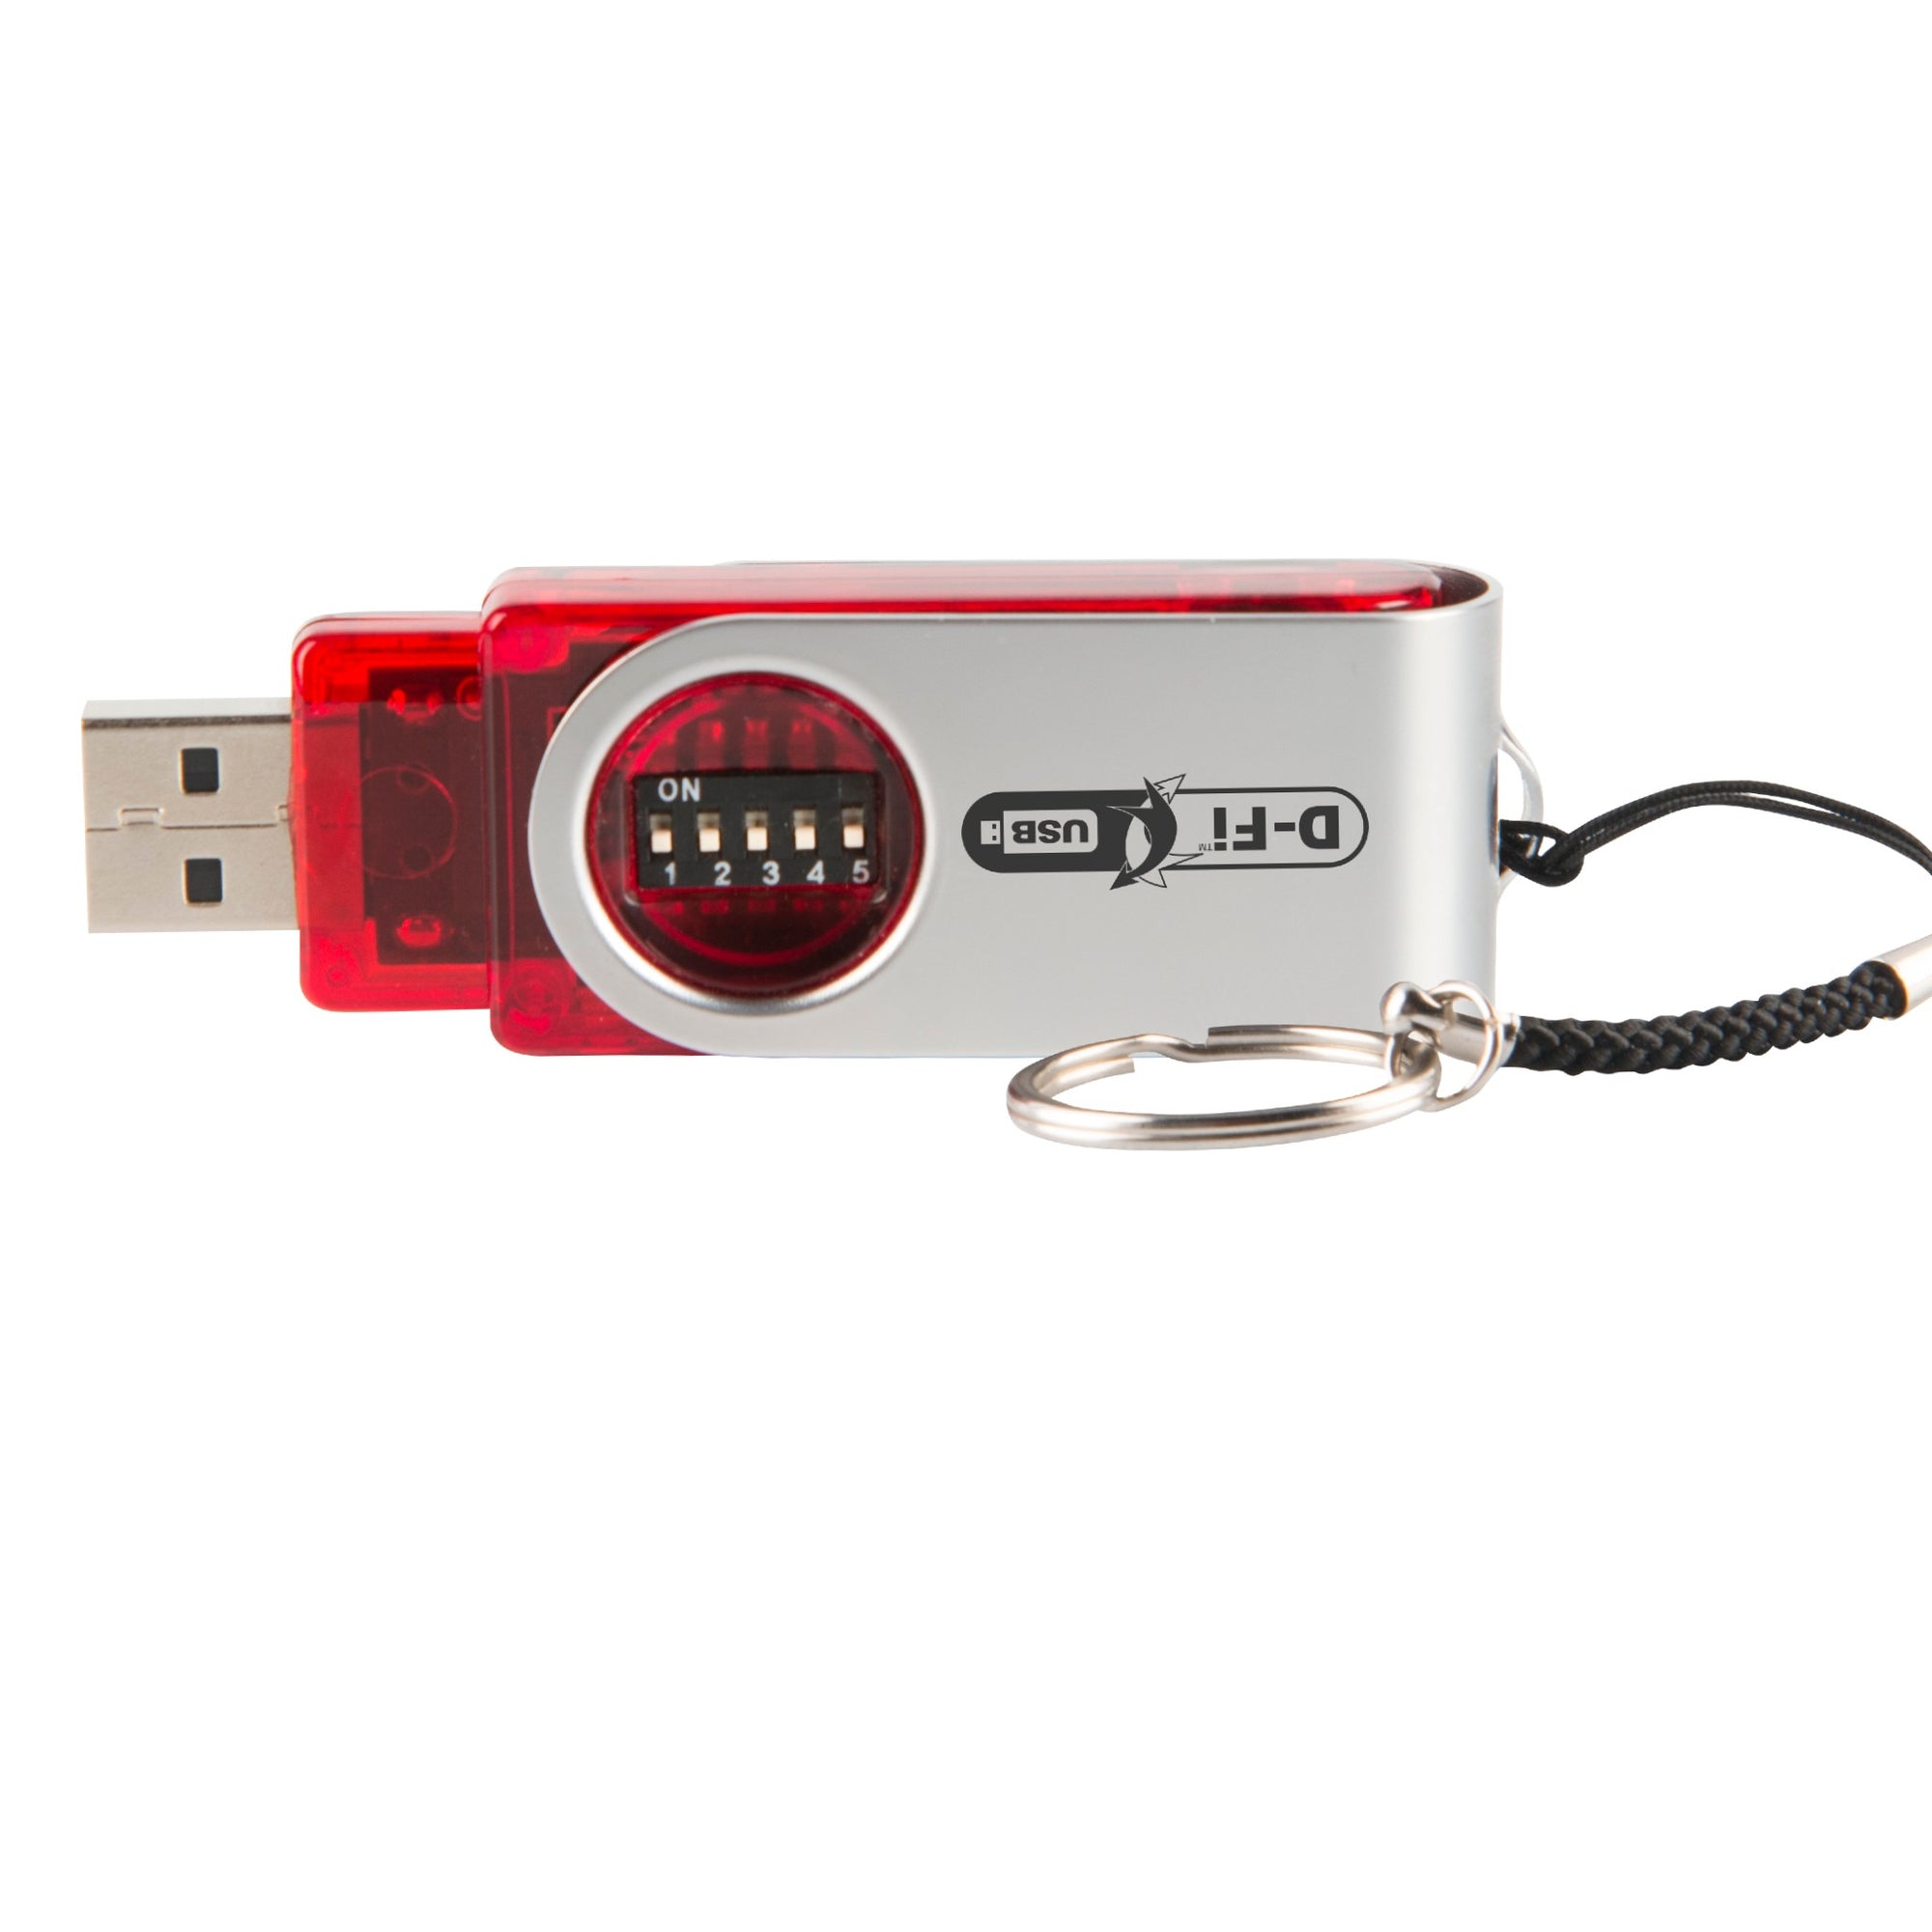 Chauvet D-FI USB Wireless DMX Transceiver